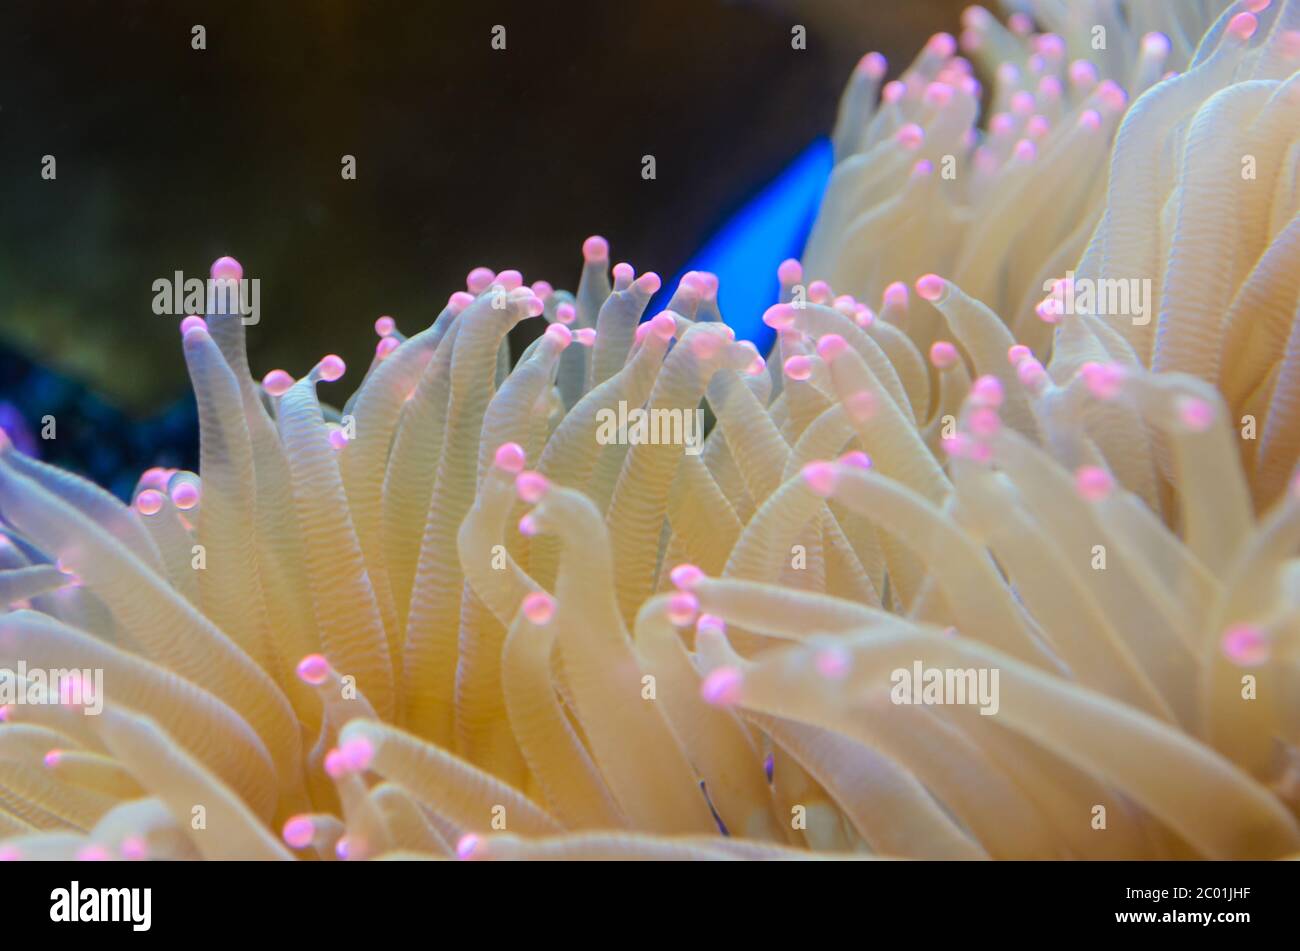 Anémonas, organismo del mar. Foto de stock